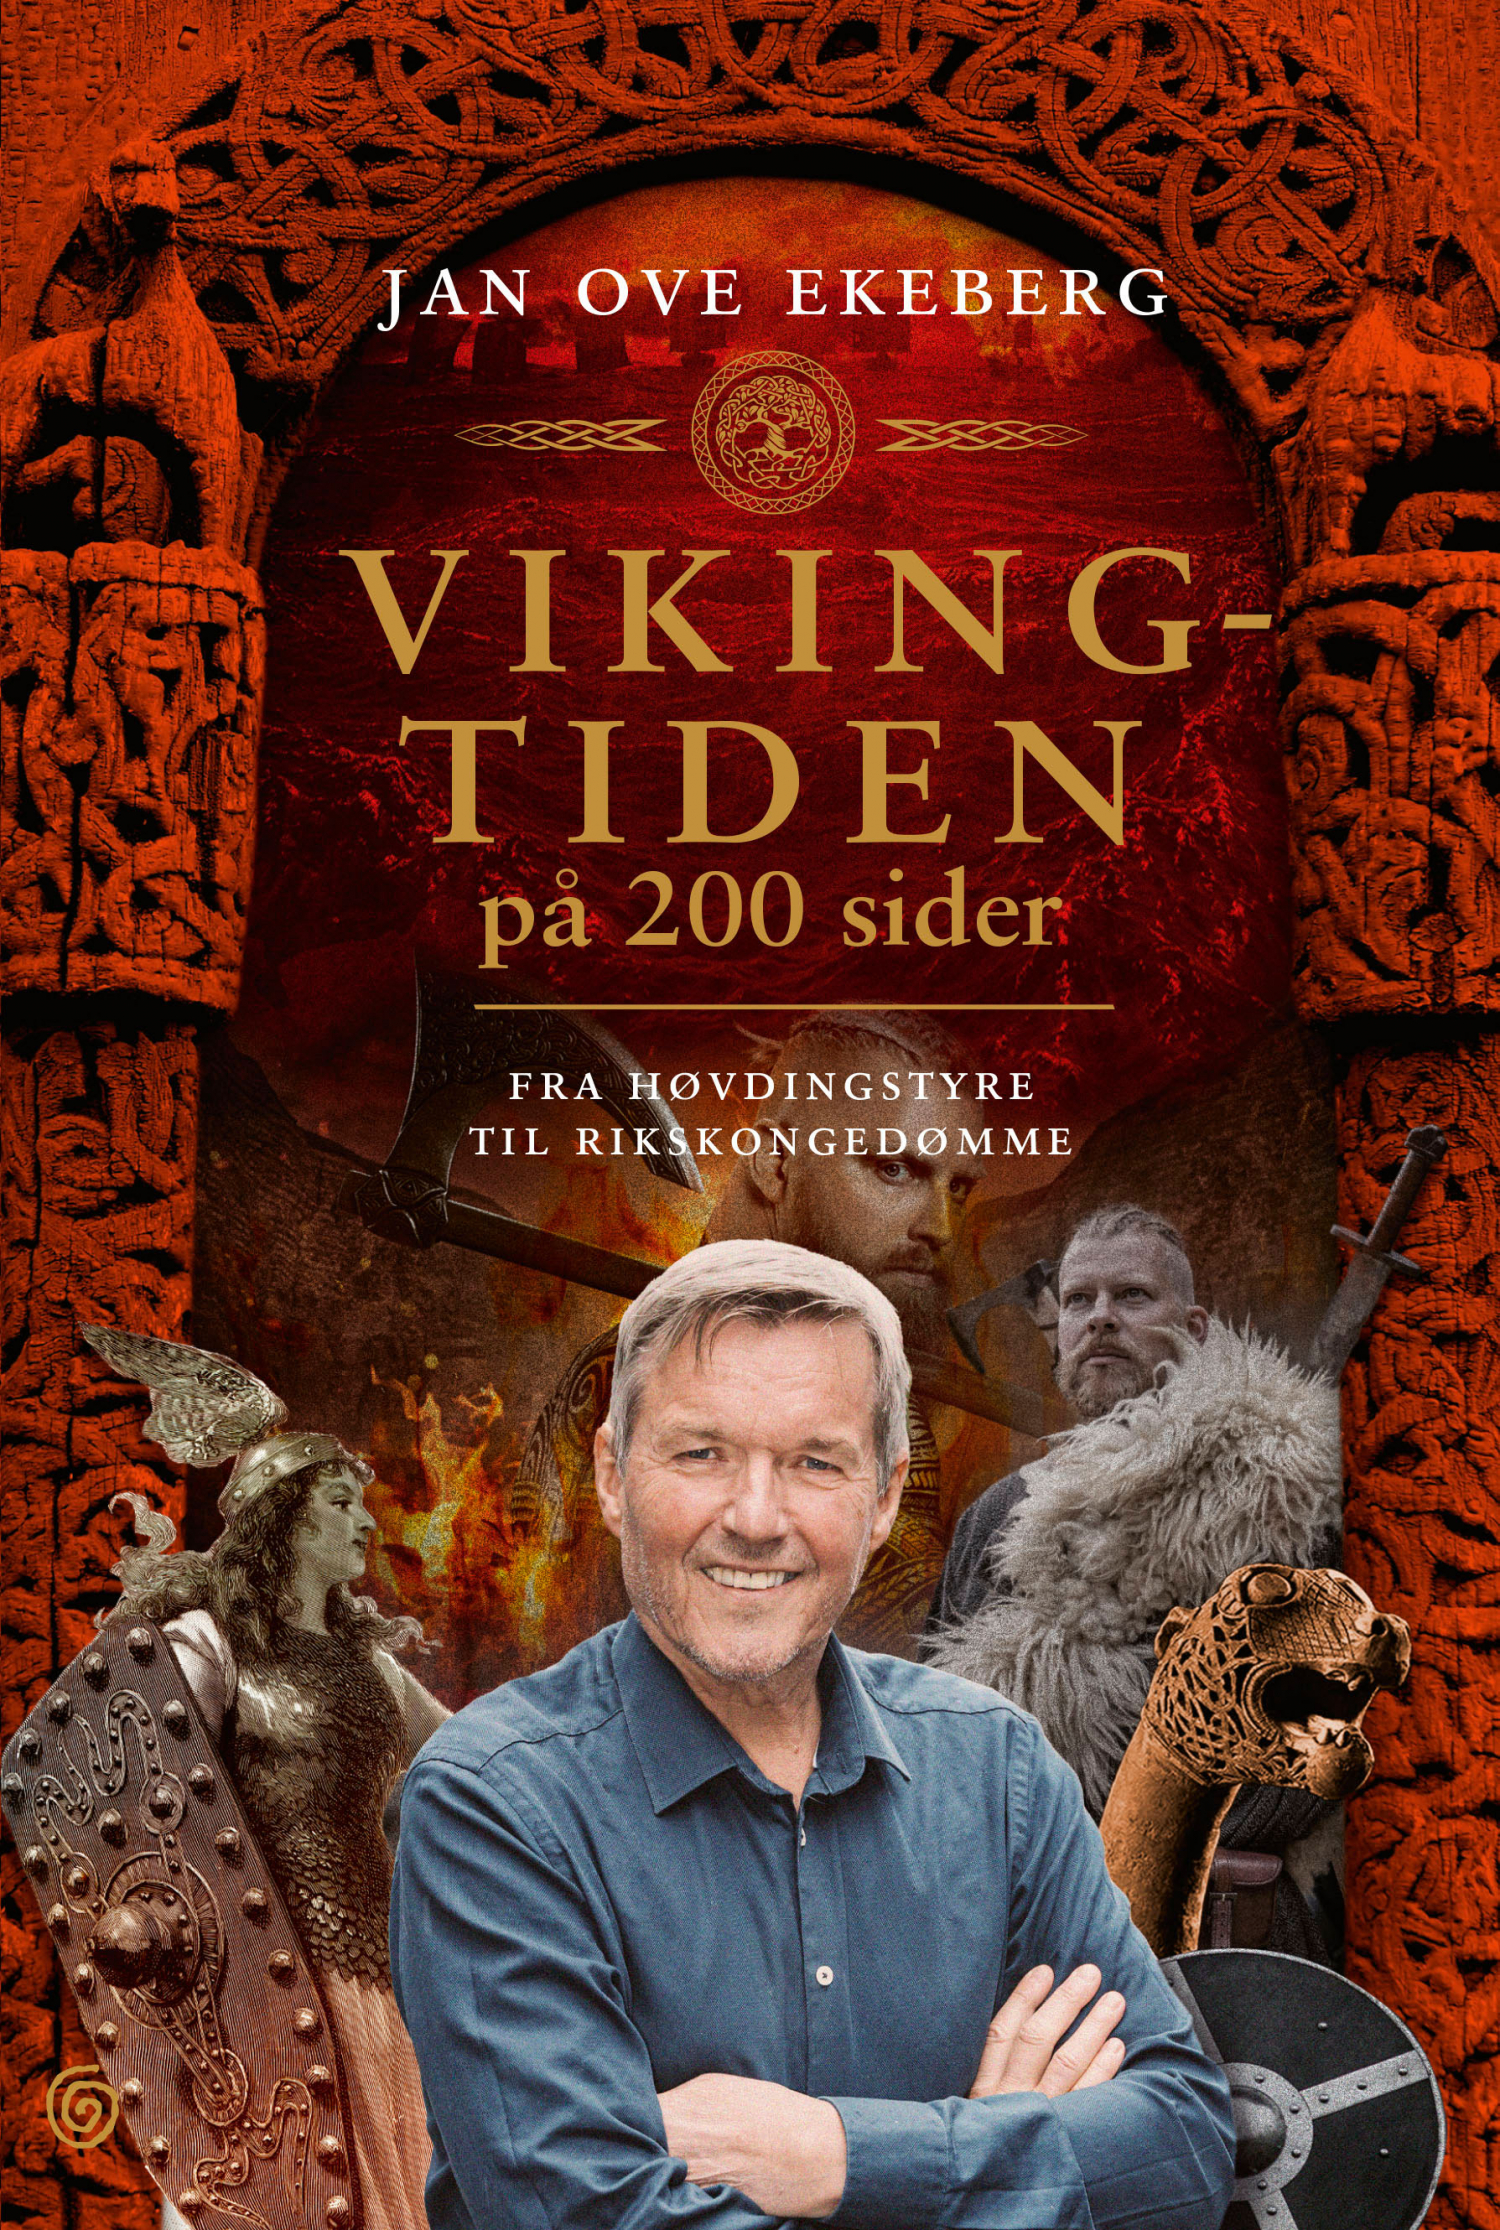 Jan Ove Ekeberg med ny bok: Vikingtiden for dummies